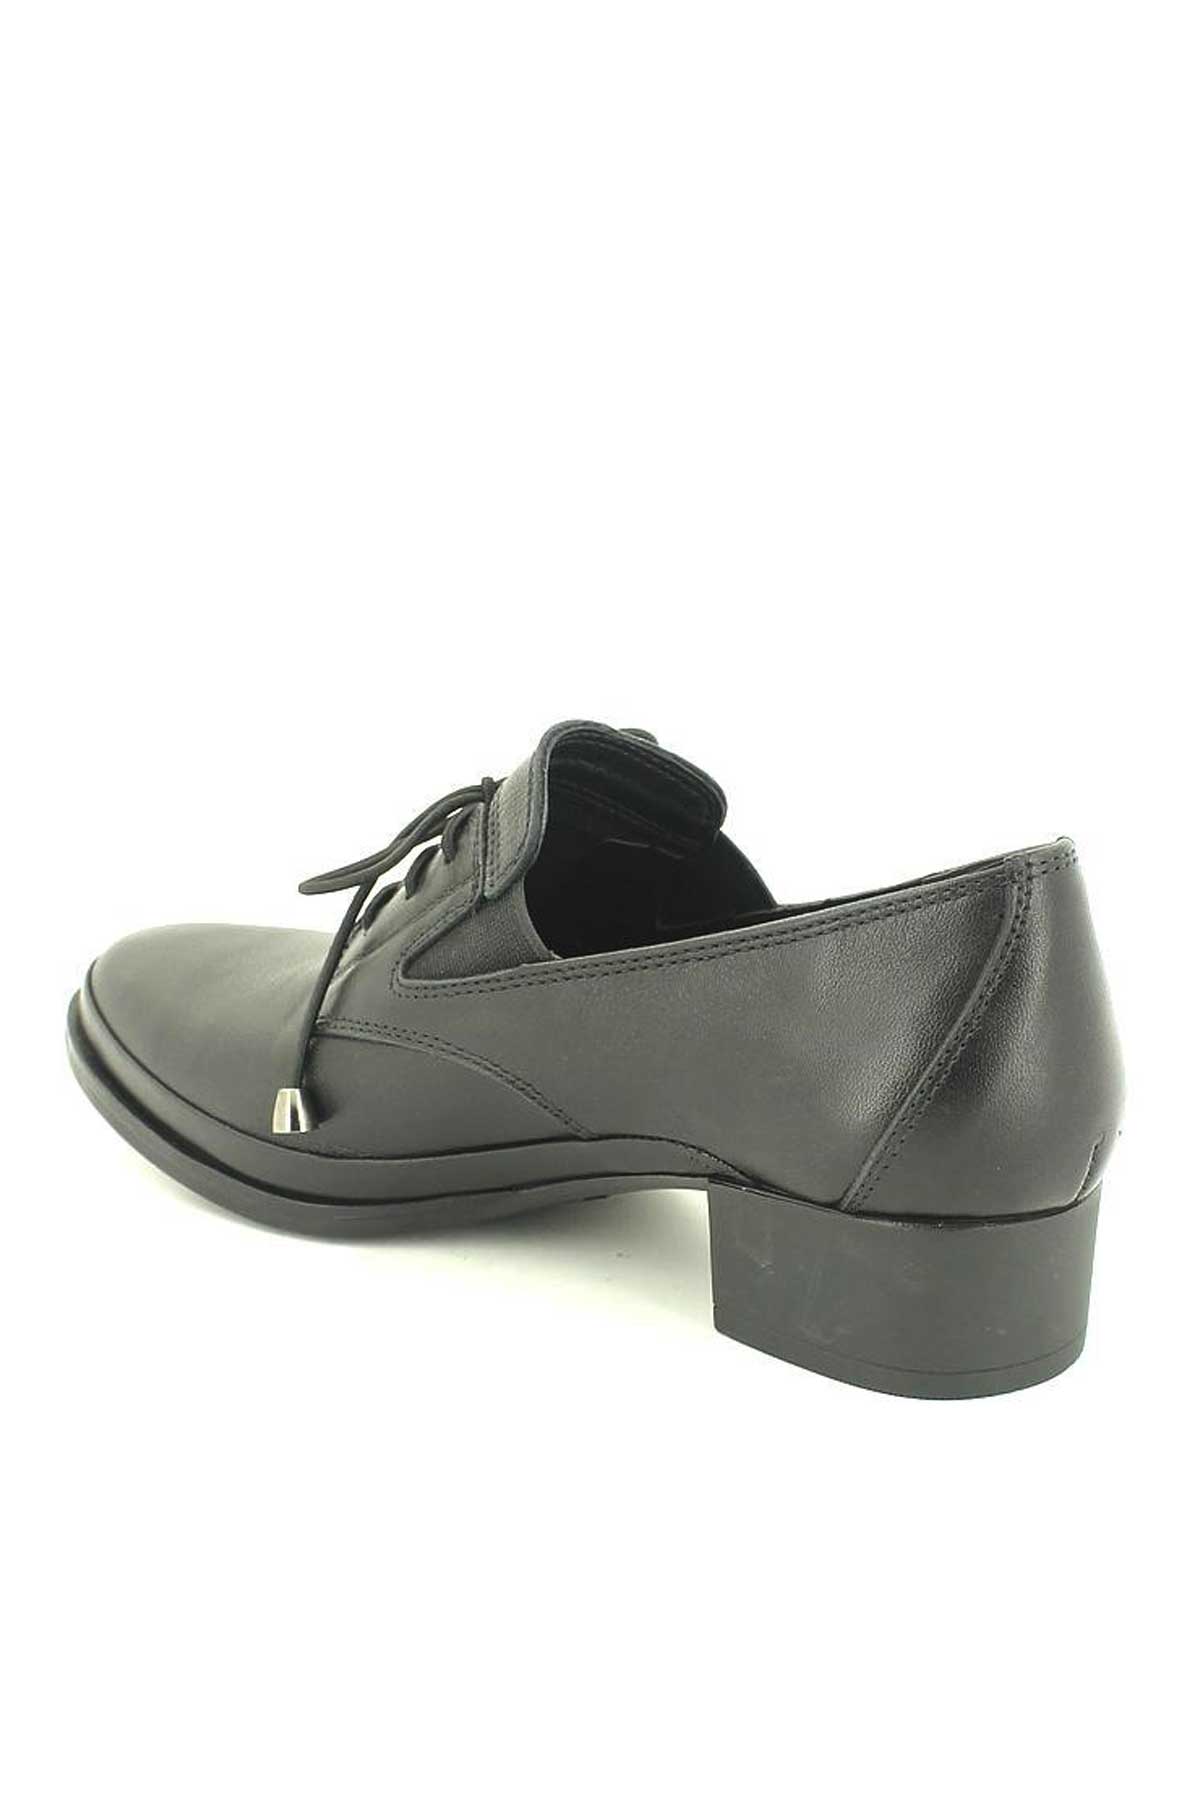 Kadın Topuklu Deri Ayakkabı Siyah 1709201K